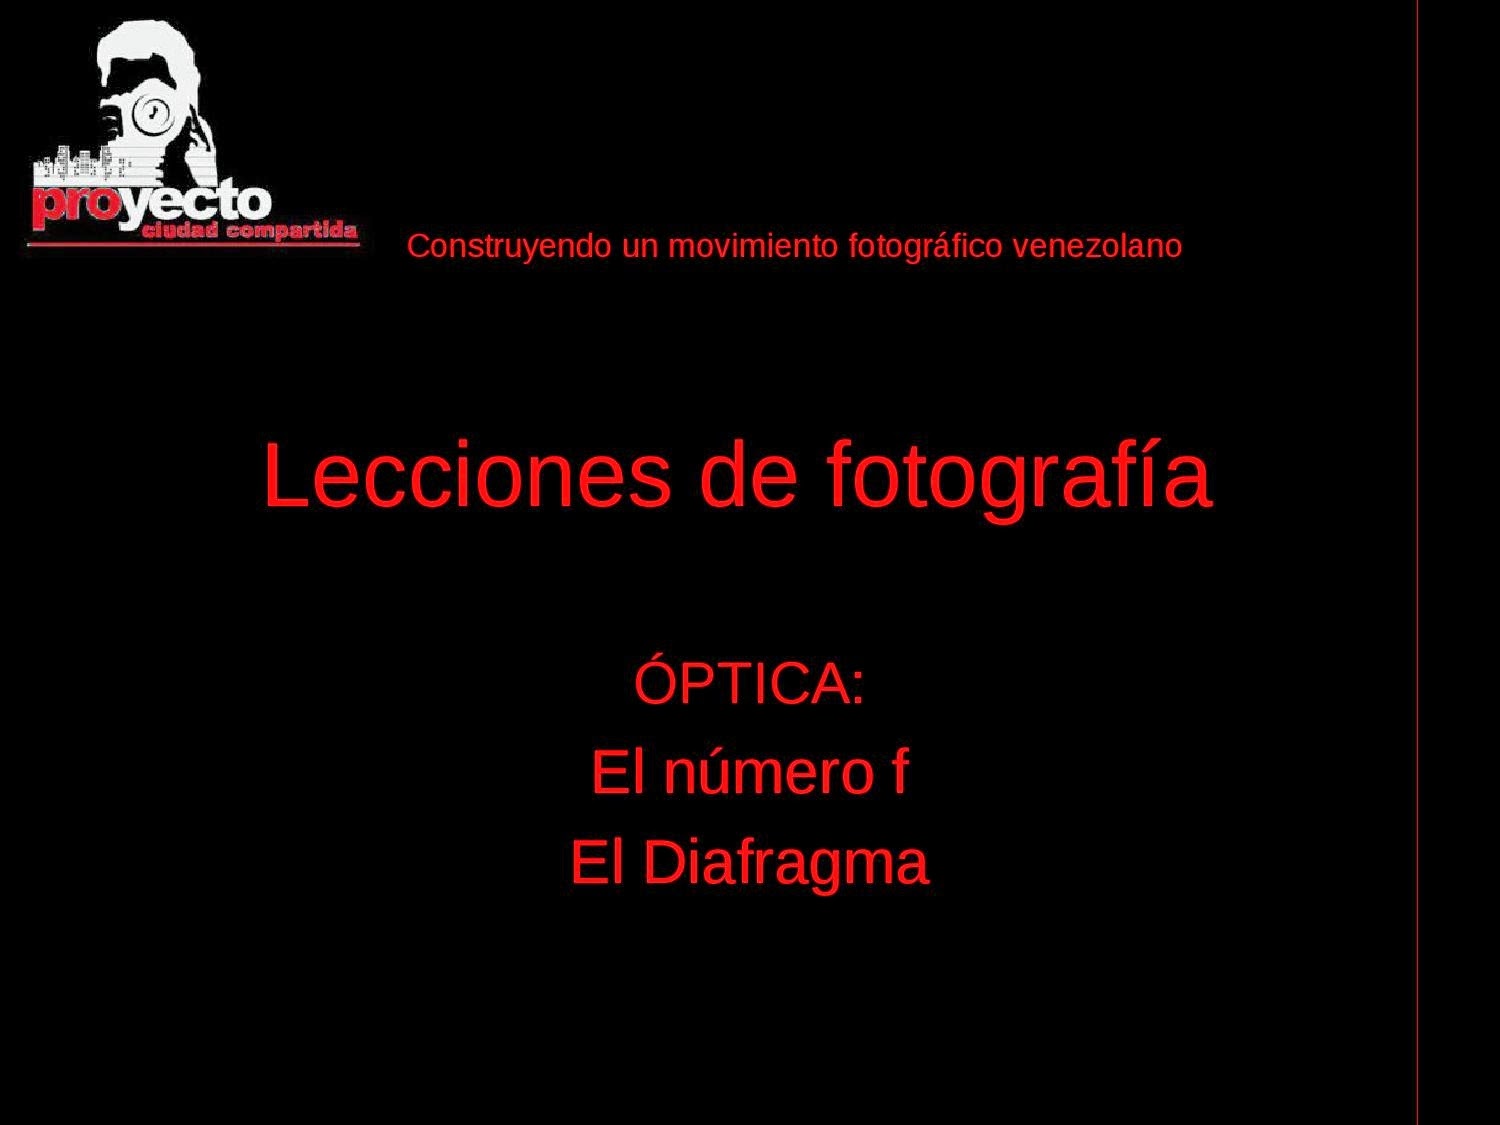 http://issuu.com/www.ciudadcompartida.com/docs/lecciones_de_fotograf__a